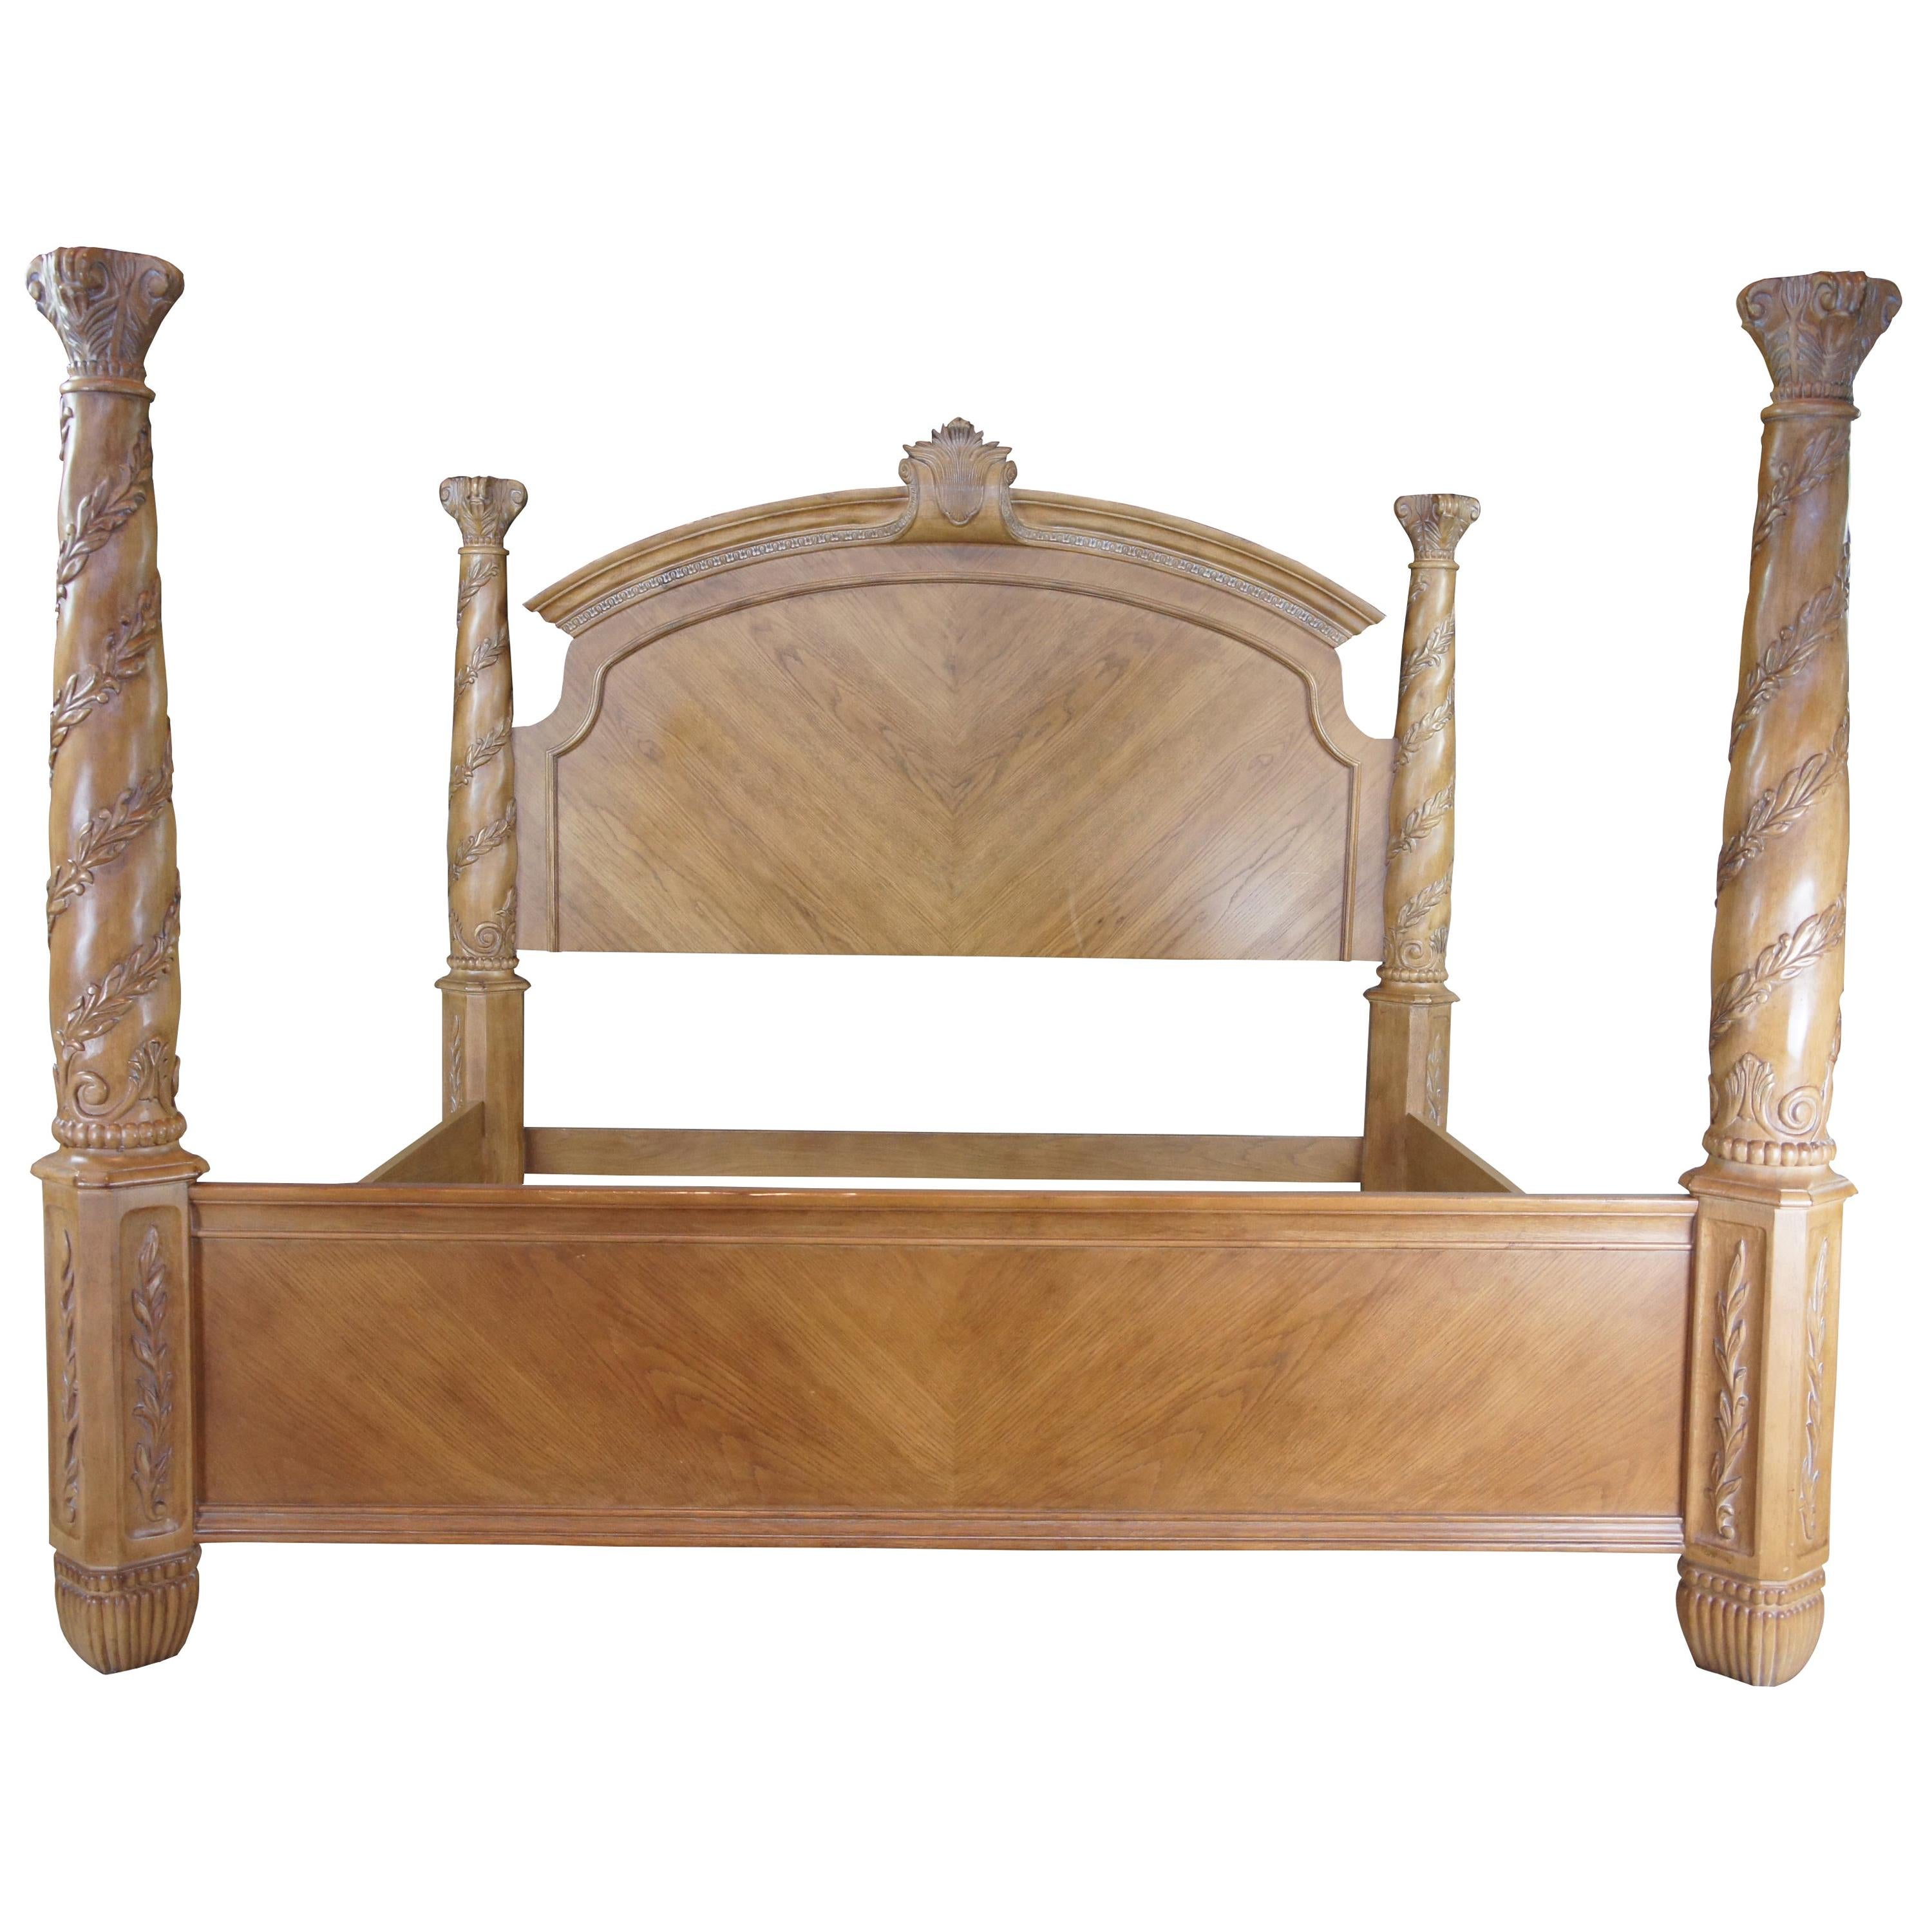 Antique King Bed Frame 